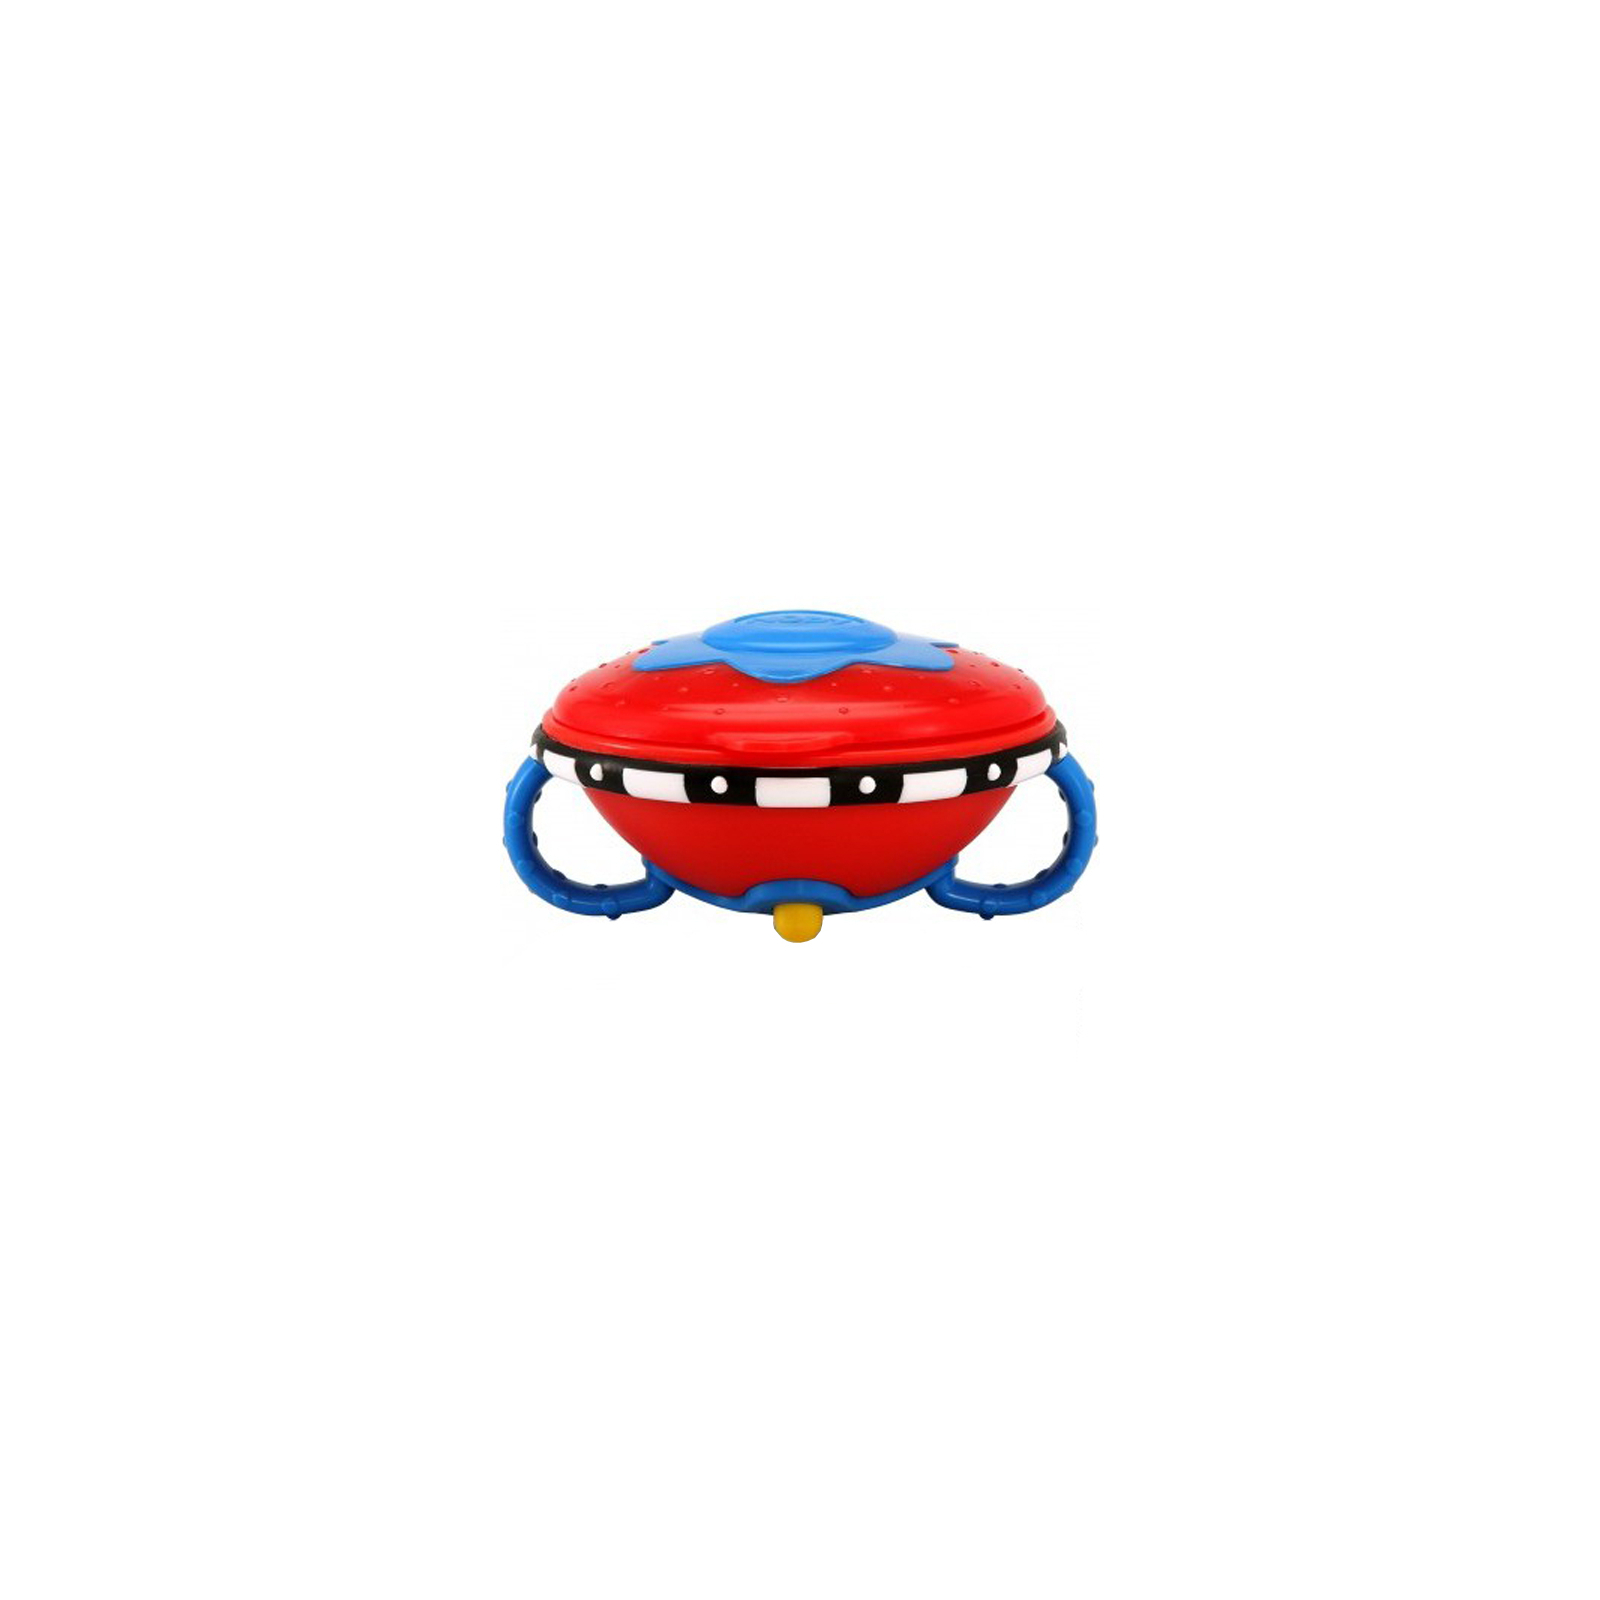 Тарелка детская Nuby для СВЧ с крышкой 200 гр, красная (5207-3)